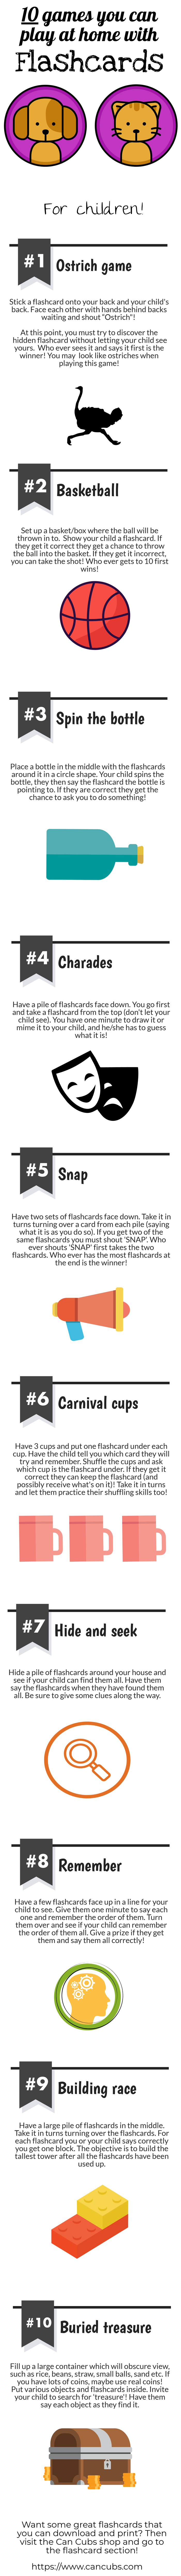 fun flashcard game ideas